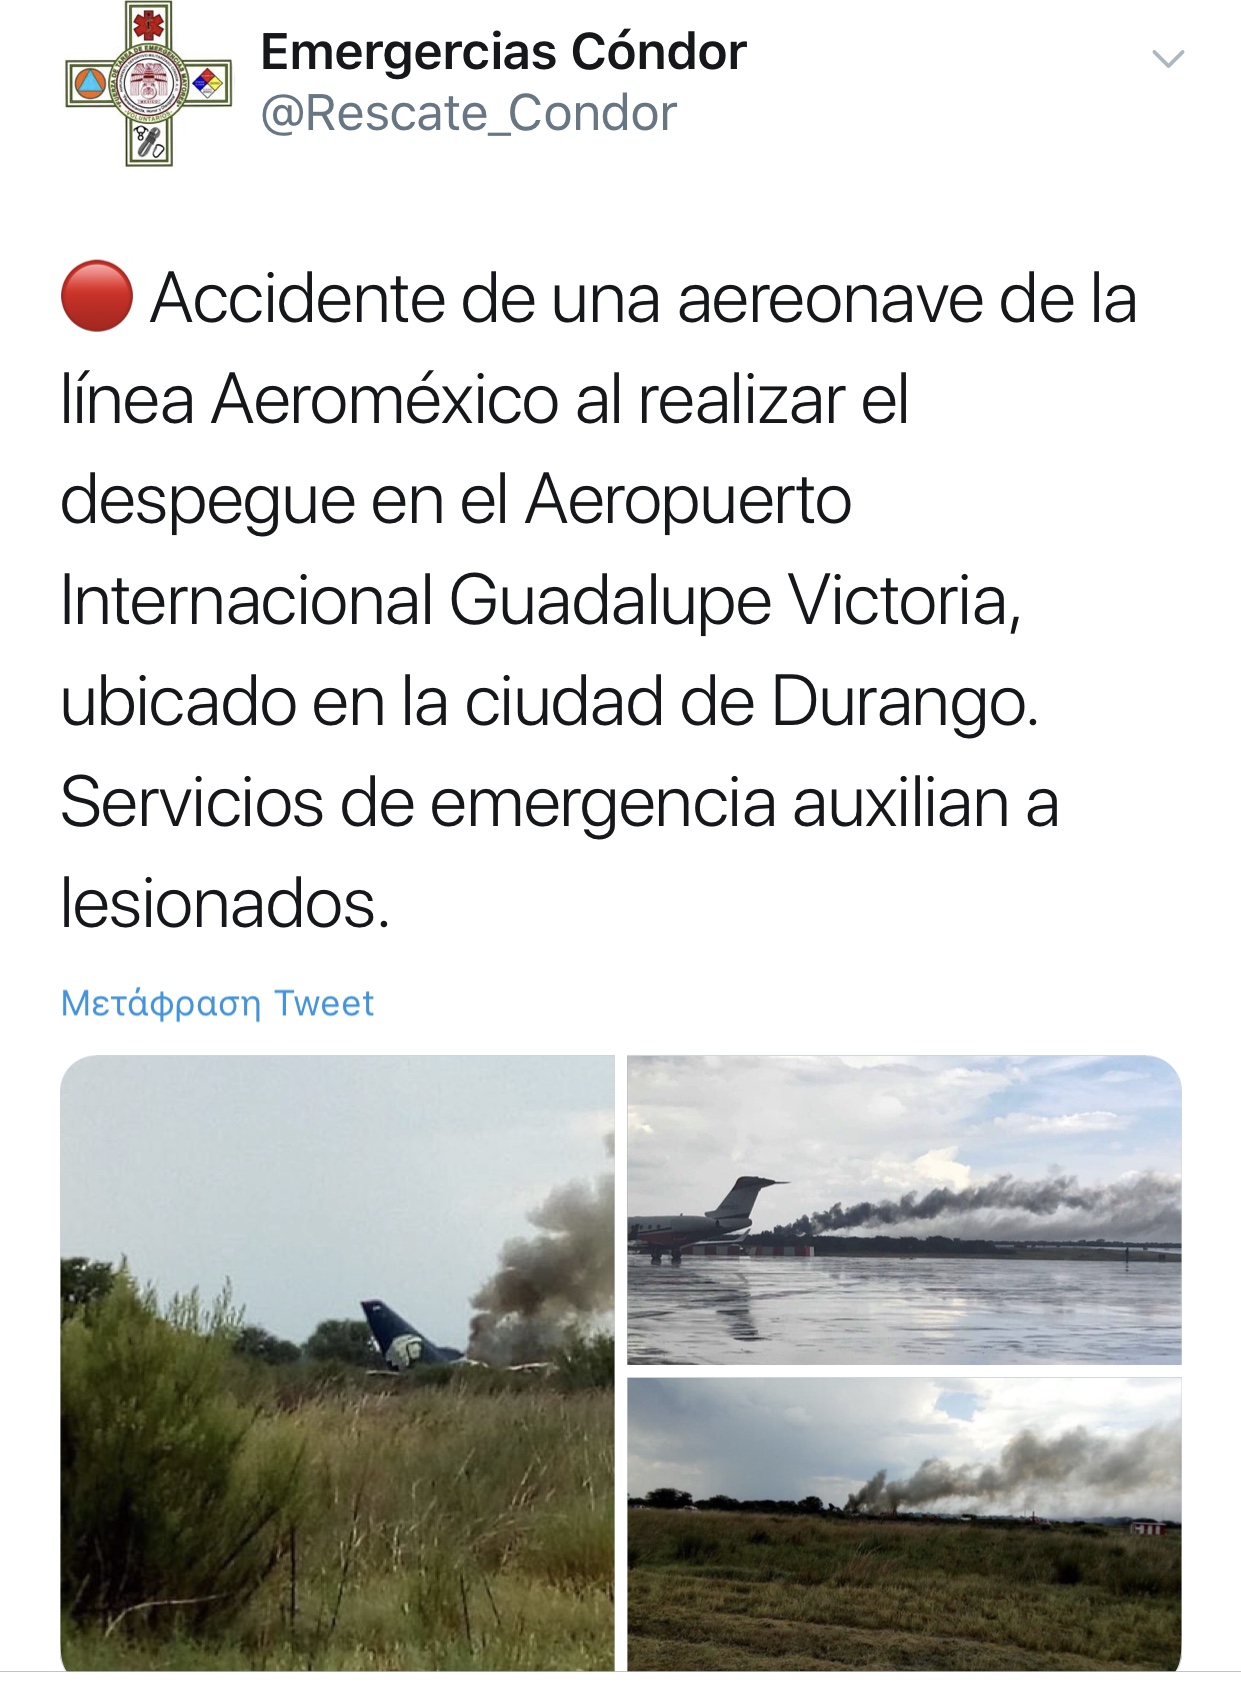 Έπεσε αεροπλάνο στο Μεξικό 